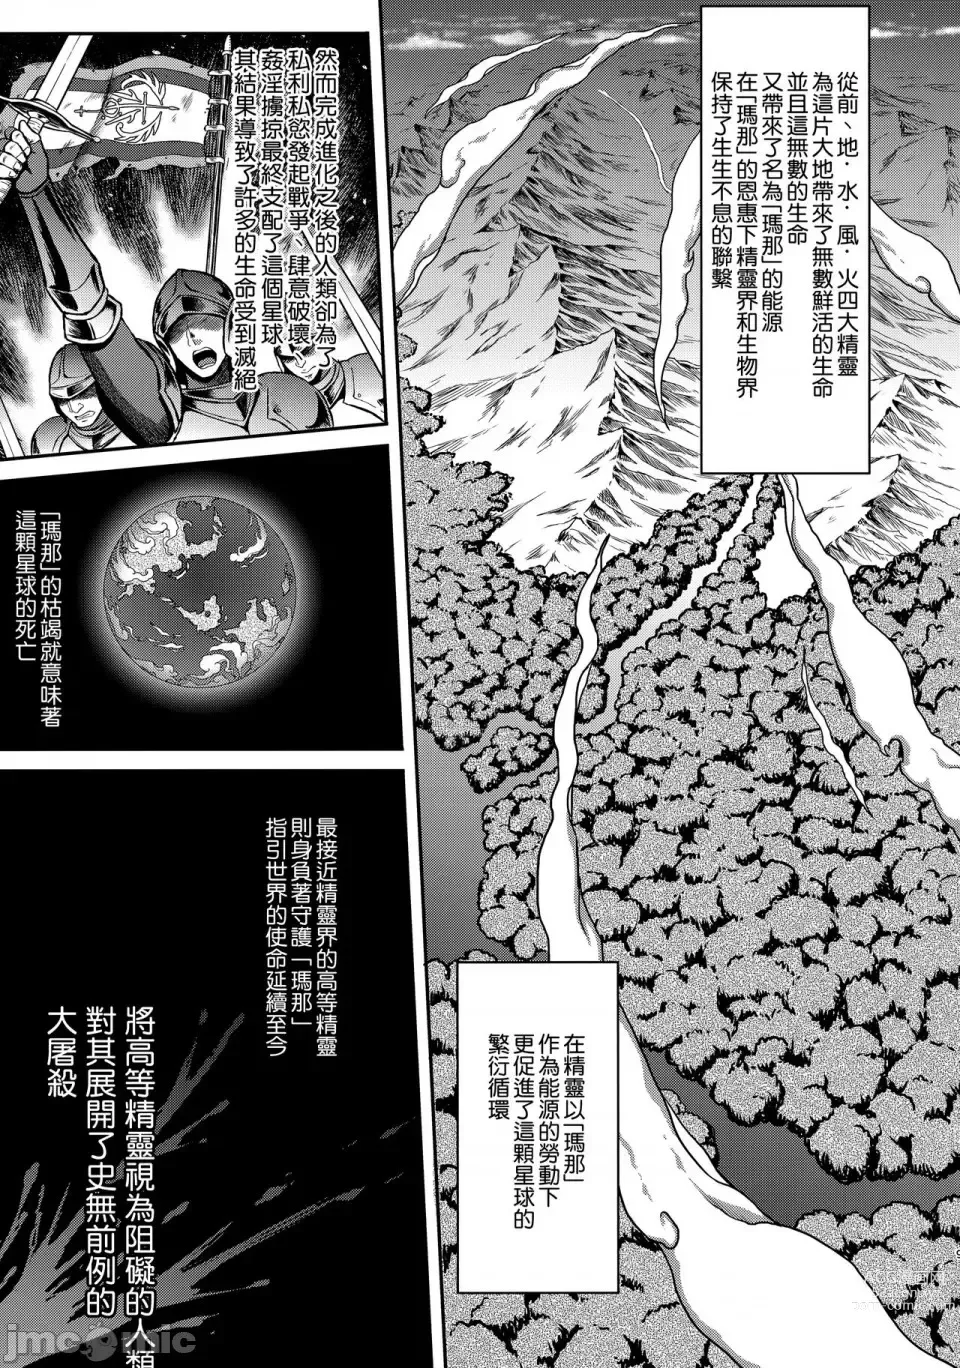 Page 7 of manga 黄昏の娼エルフ